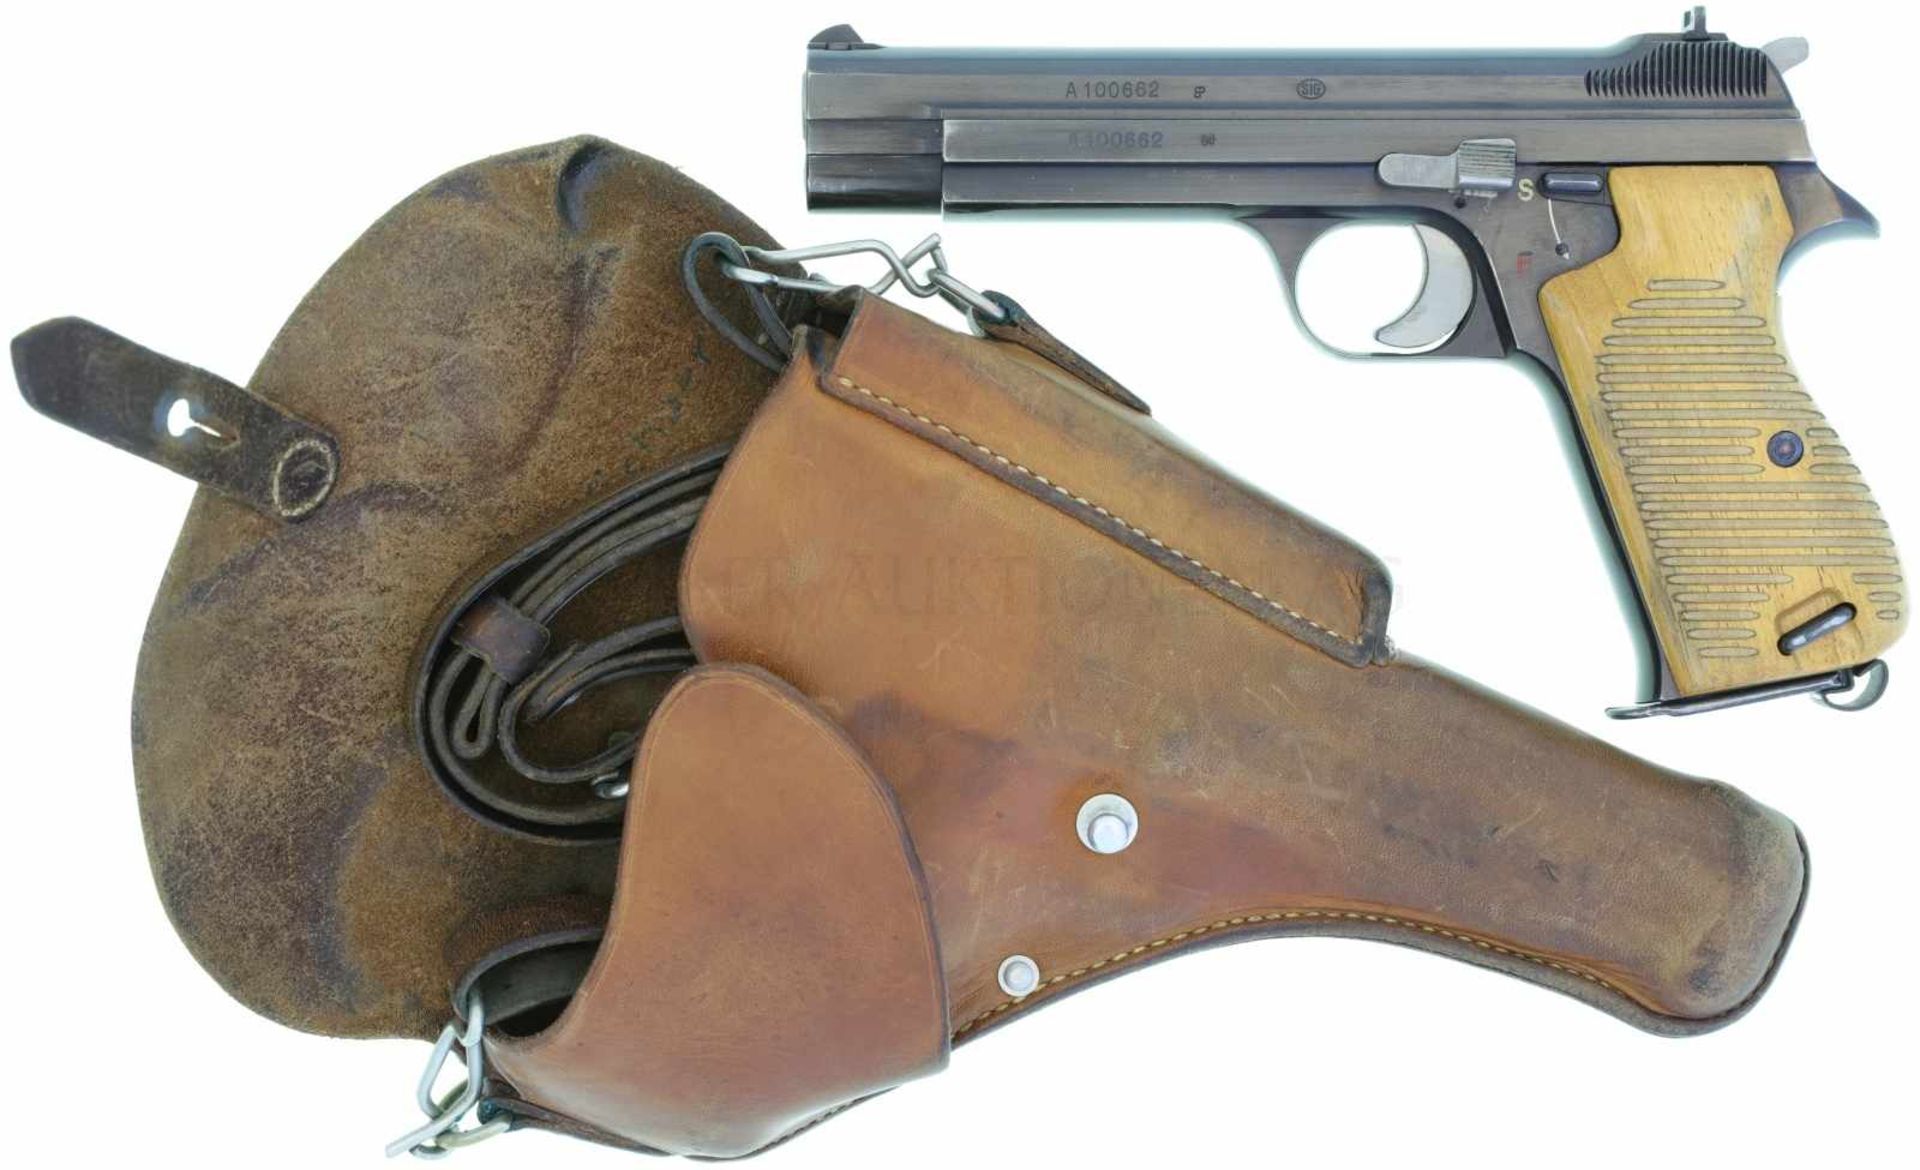 Pistole, SIG P49, aus 1. Lieferung an KTA Kal. 9mmP LL 120mm, hochglanzpolierte, brünierte